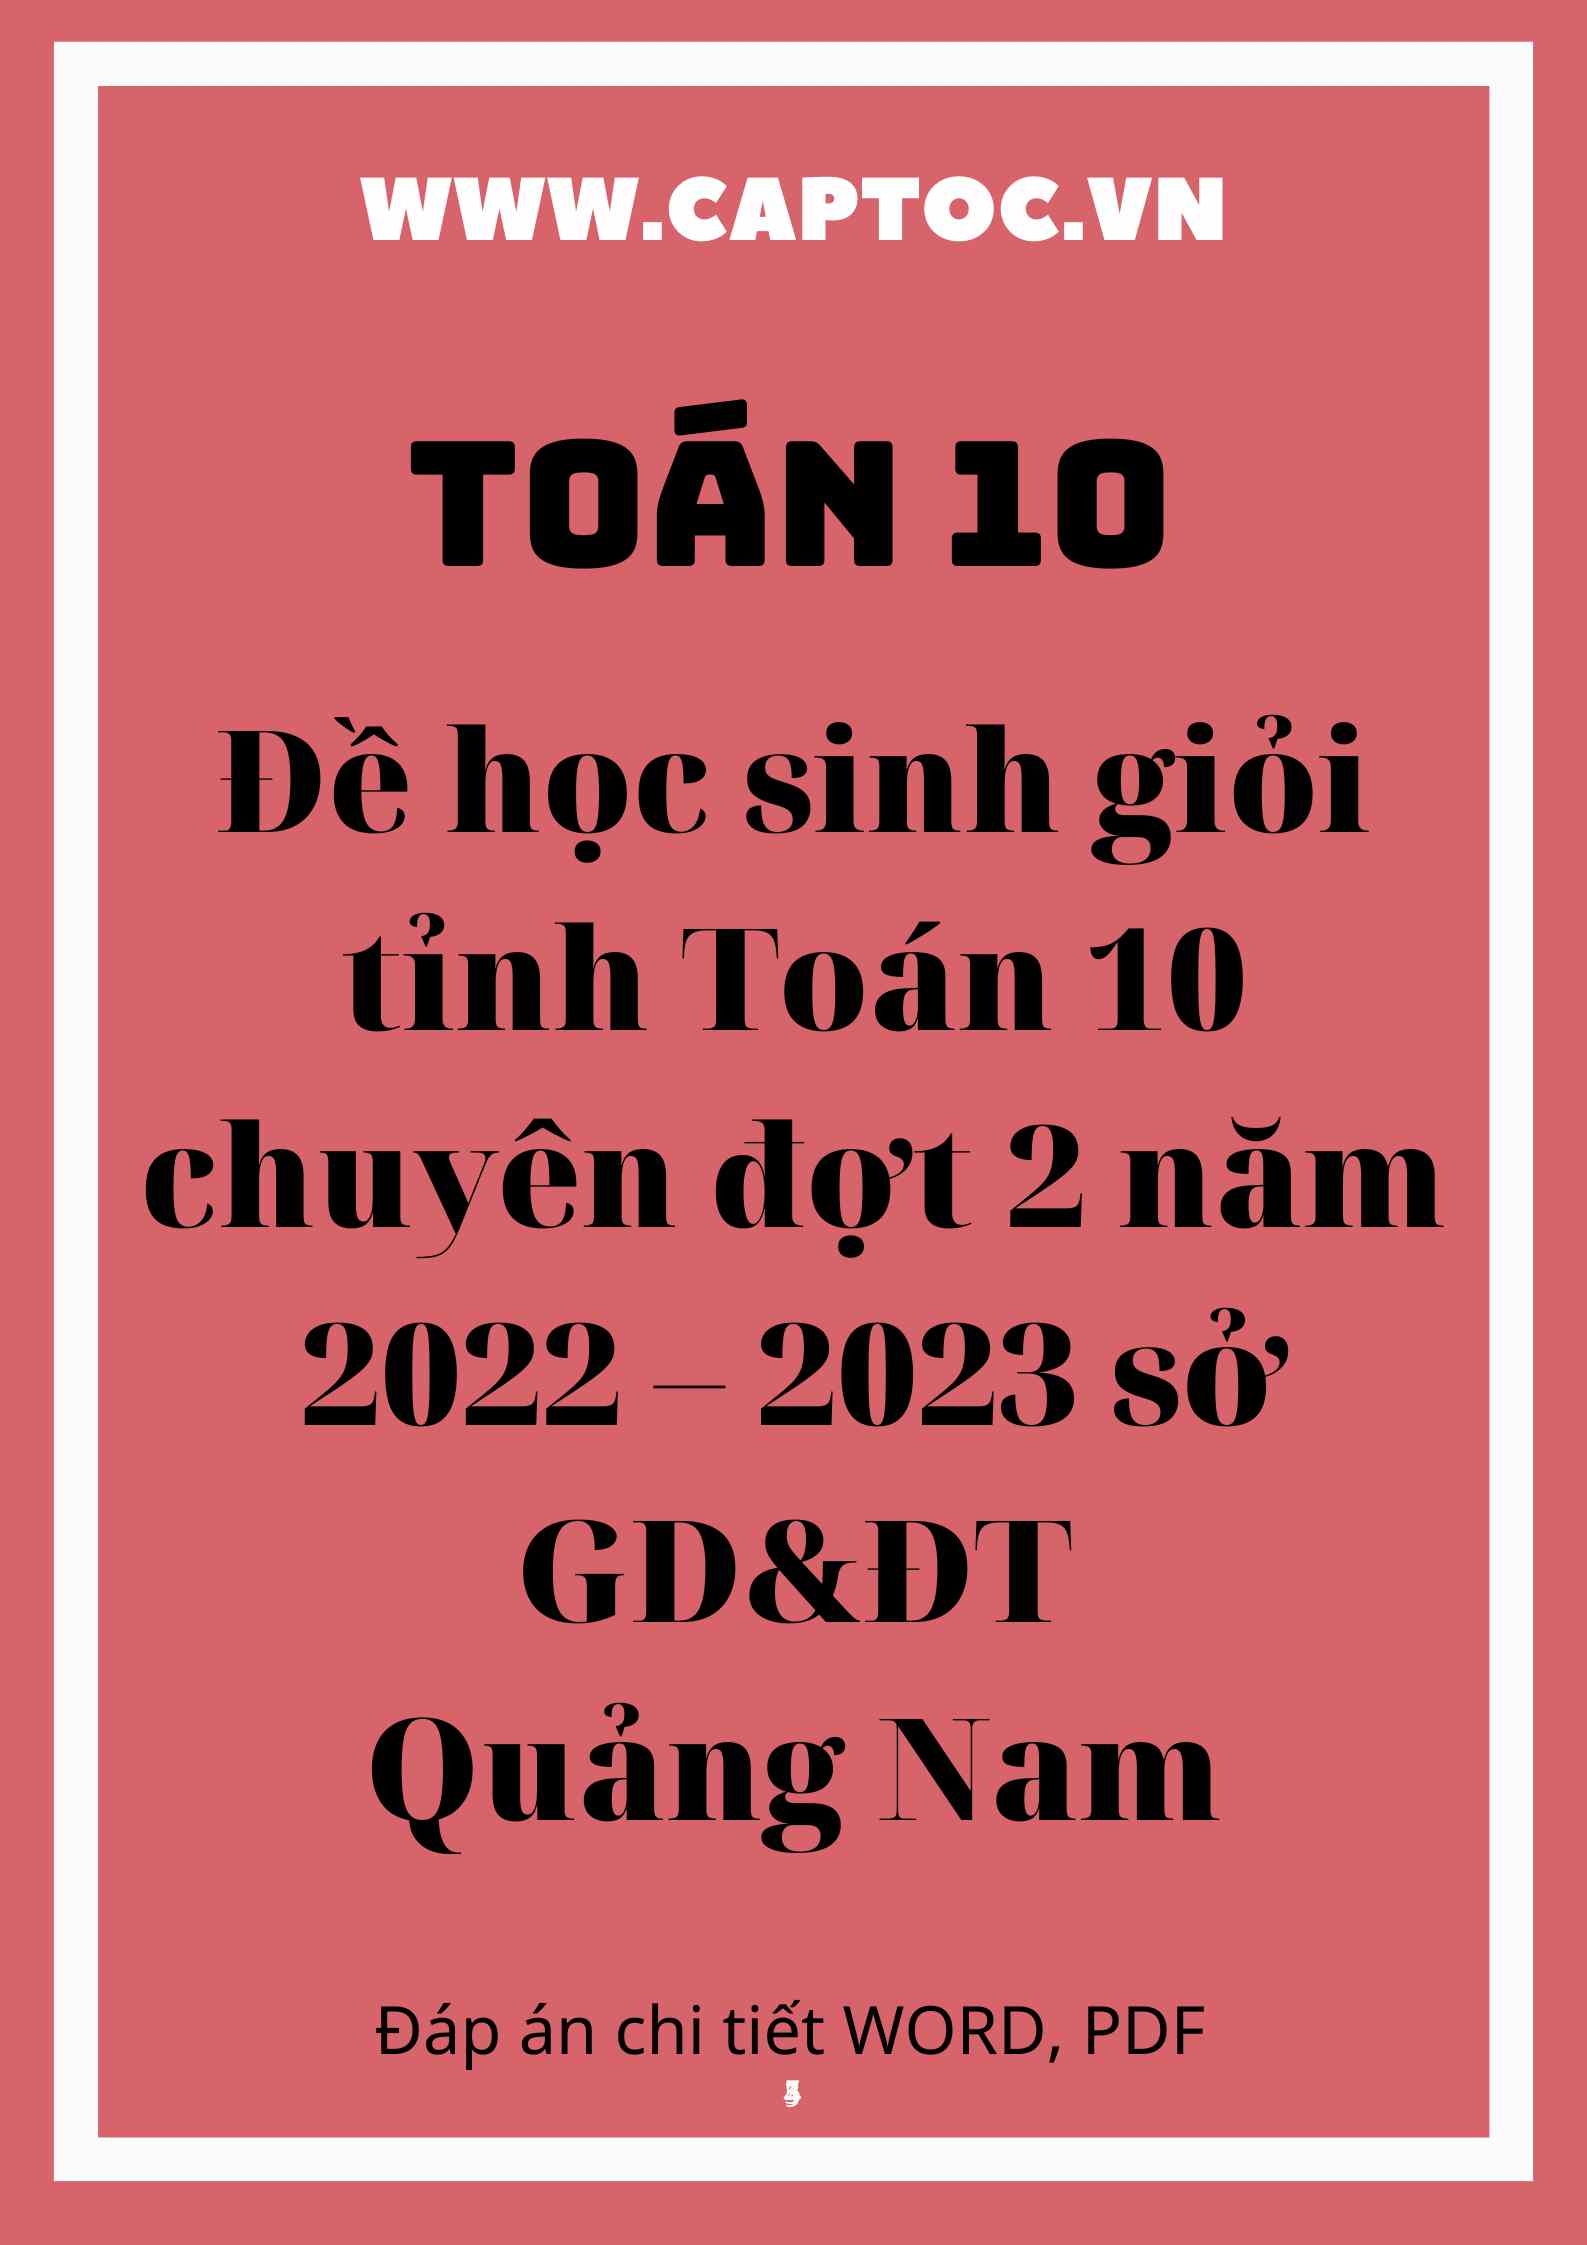 Đề học sinh giỏi tỉnh Toán 10 chuyên đợt 2 năm 2022 – 2023 sở GD&ĐT Quảng Nam